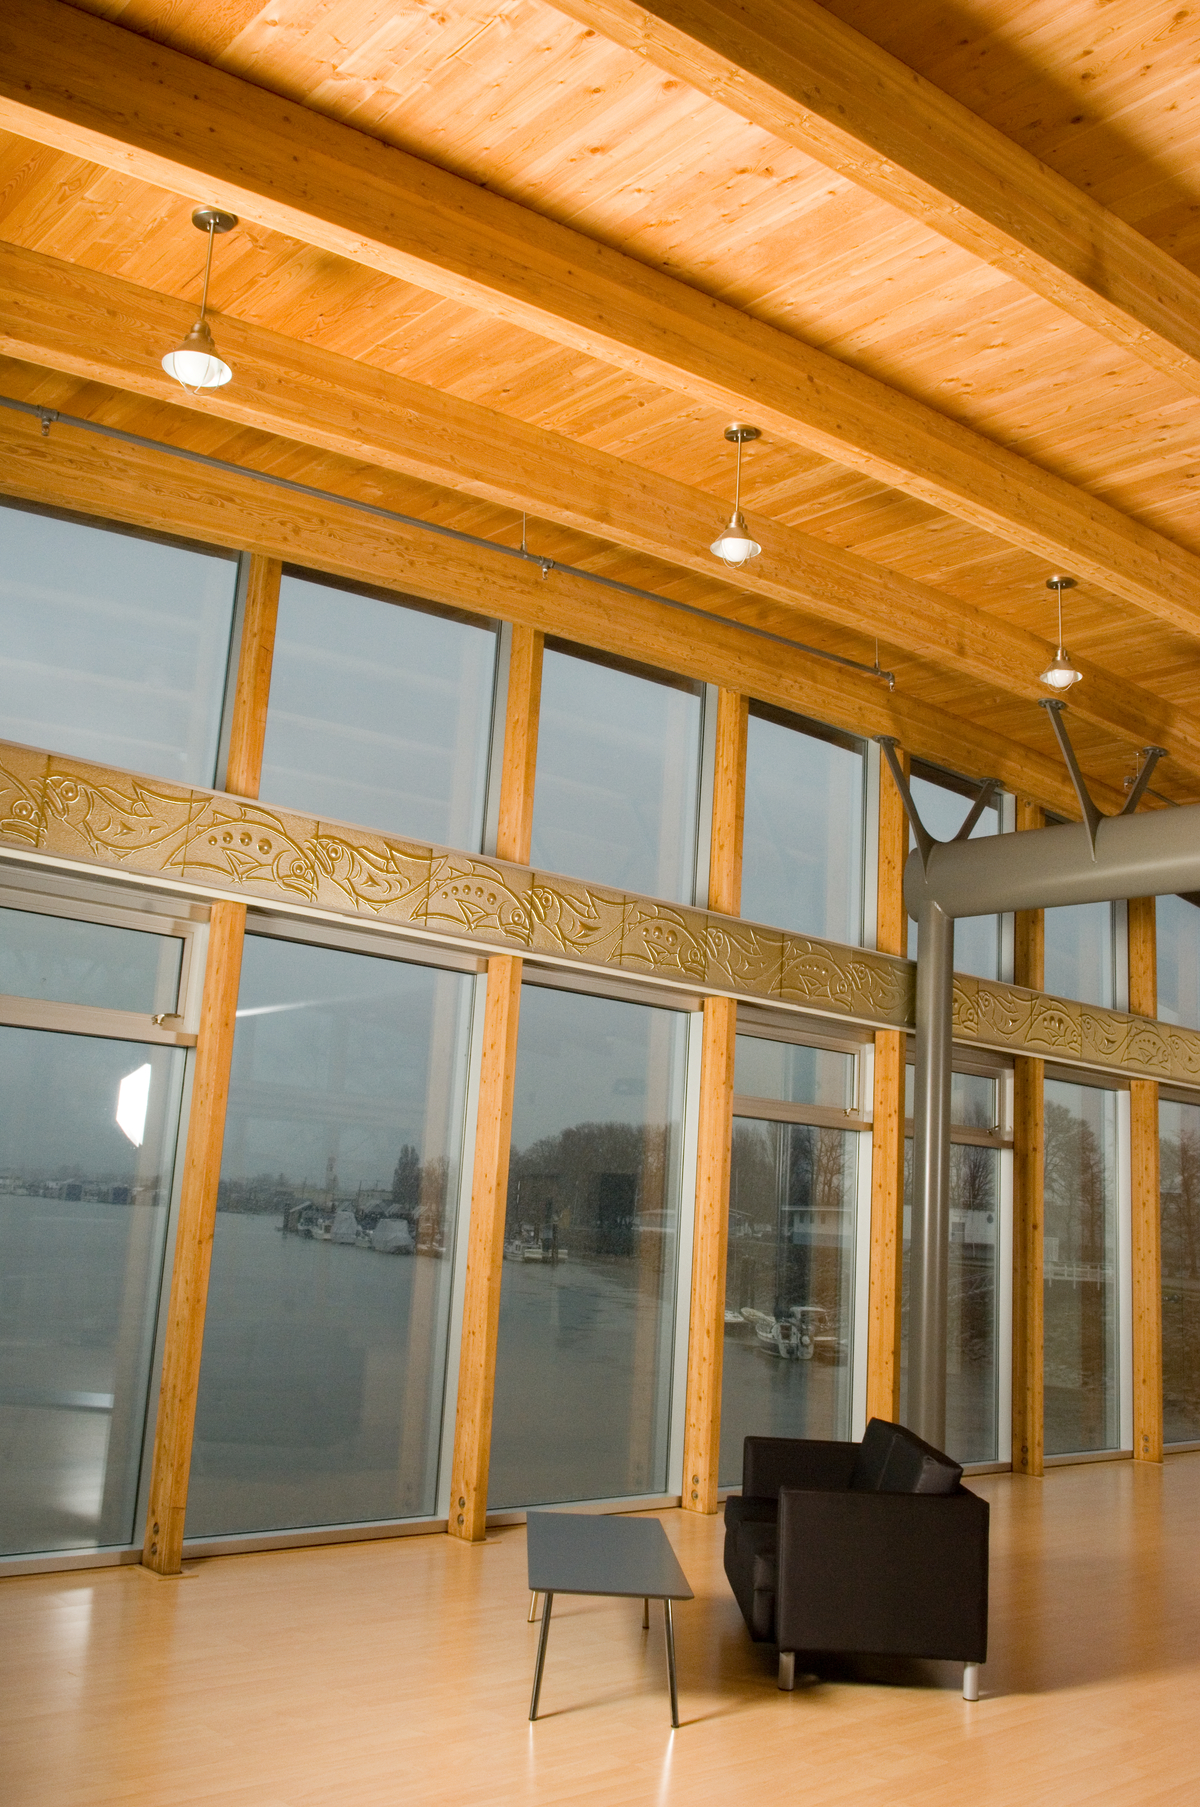 John M.S. Lecky UBC船屋天花板和膨胀的玻璃外墙的室内近景，展示了钢、胶合木(胶合木)和木材轻型框架屋顶结构的组合